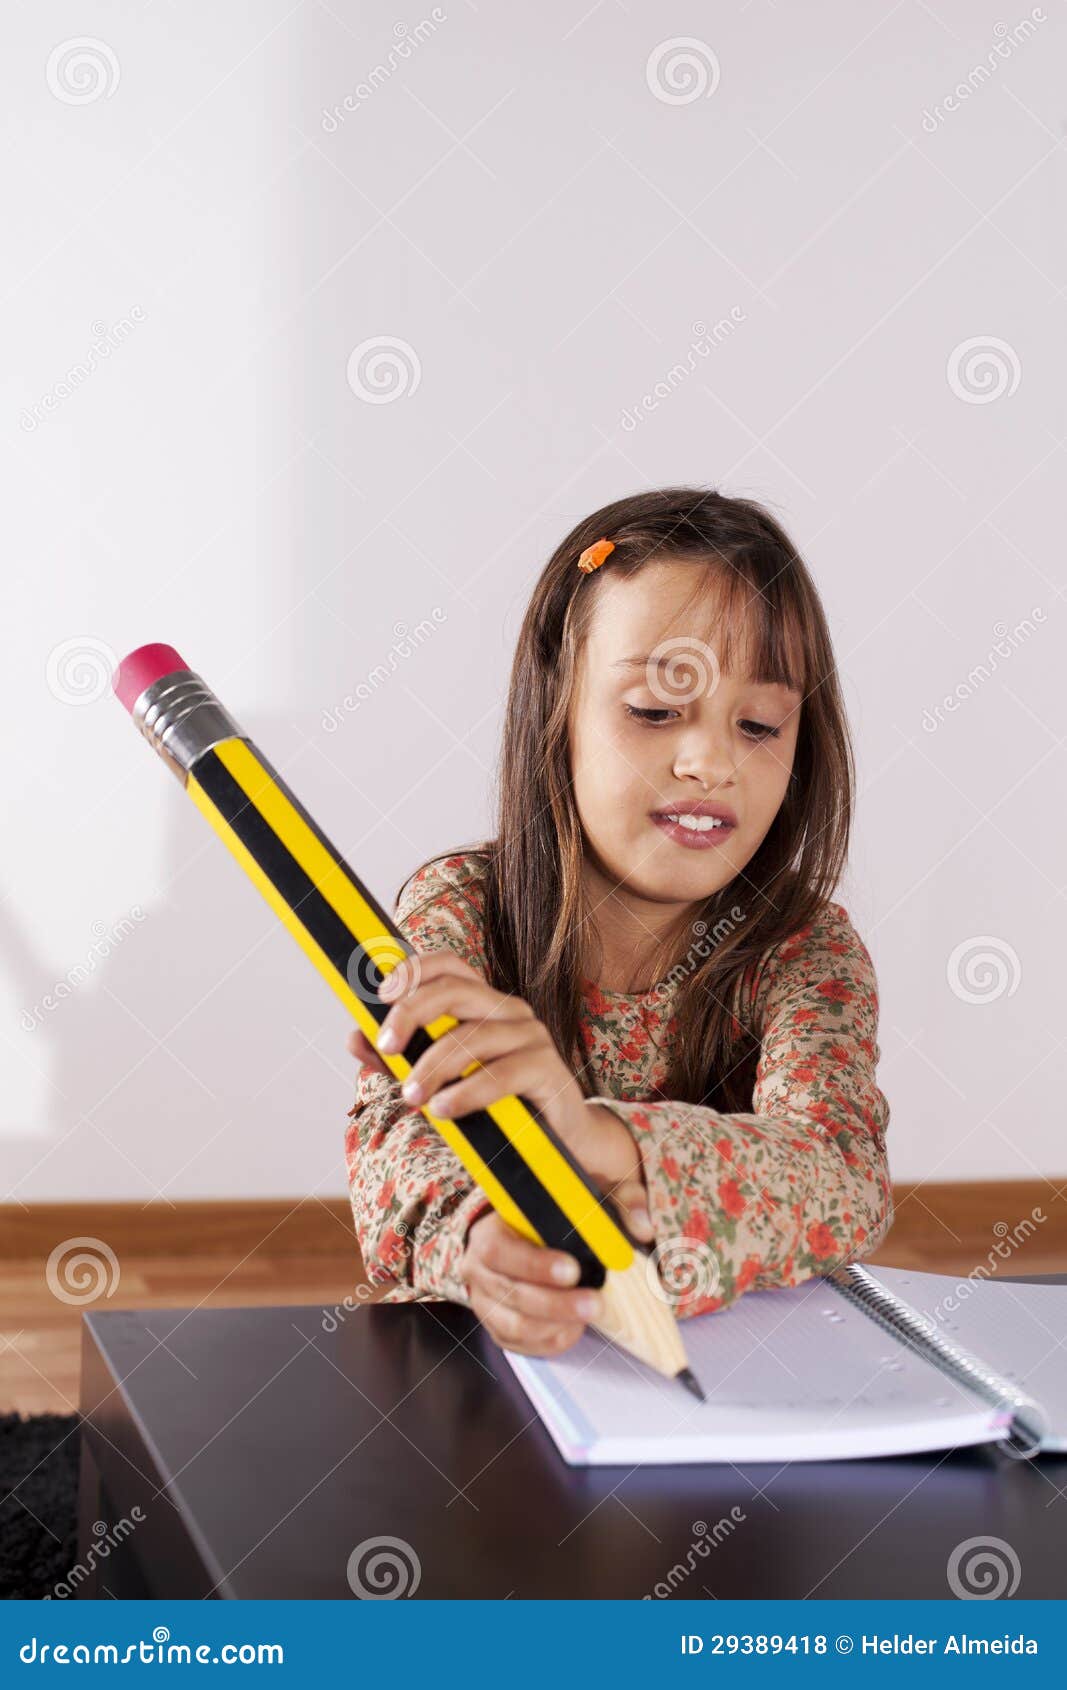 Громадный пишем. Гигантский карандаш для фотосессии. Огромный карандаш. Карандаши гигантов фото. Девочка пишет рисунок.